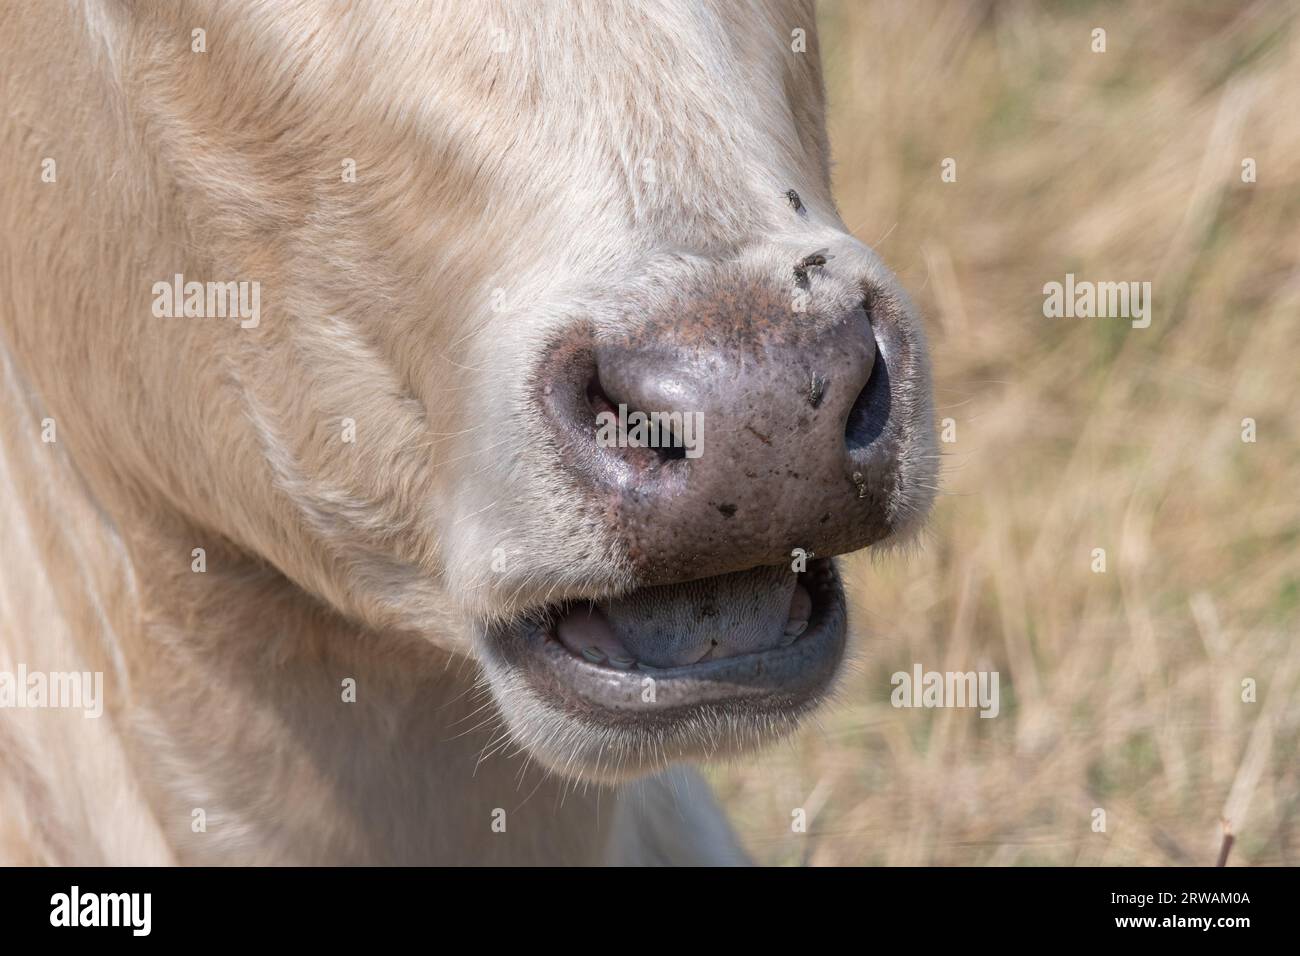 Gros plan d'une vache mâchant le cud, comportement animal ruminant Banque D'Images